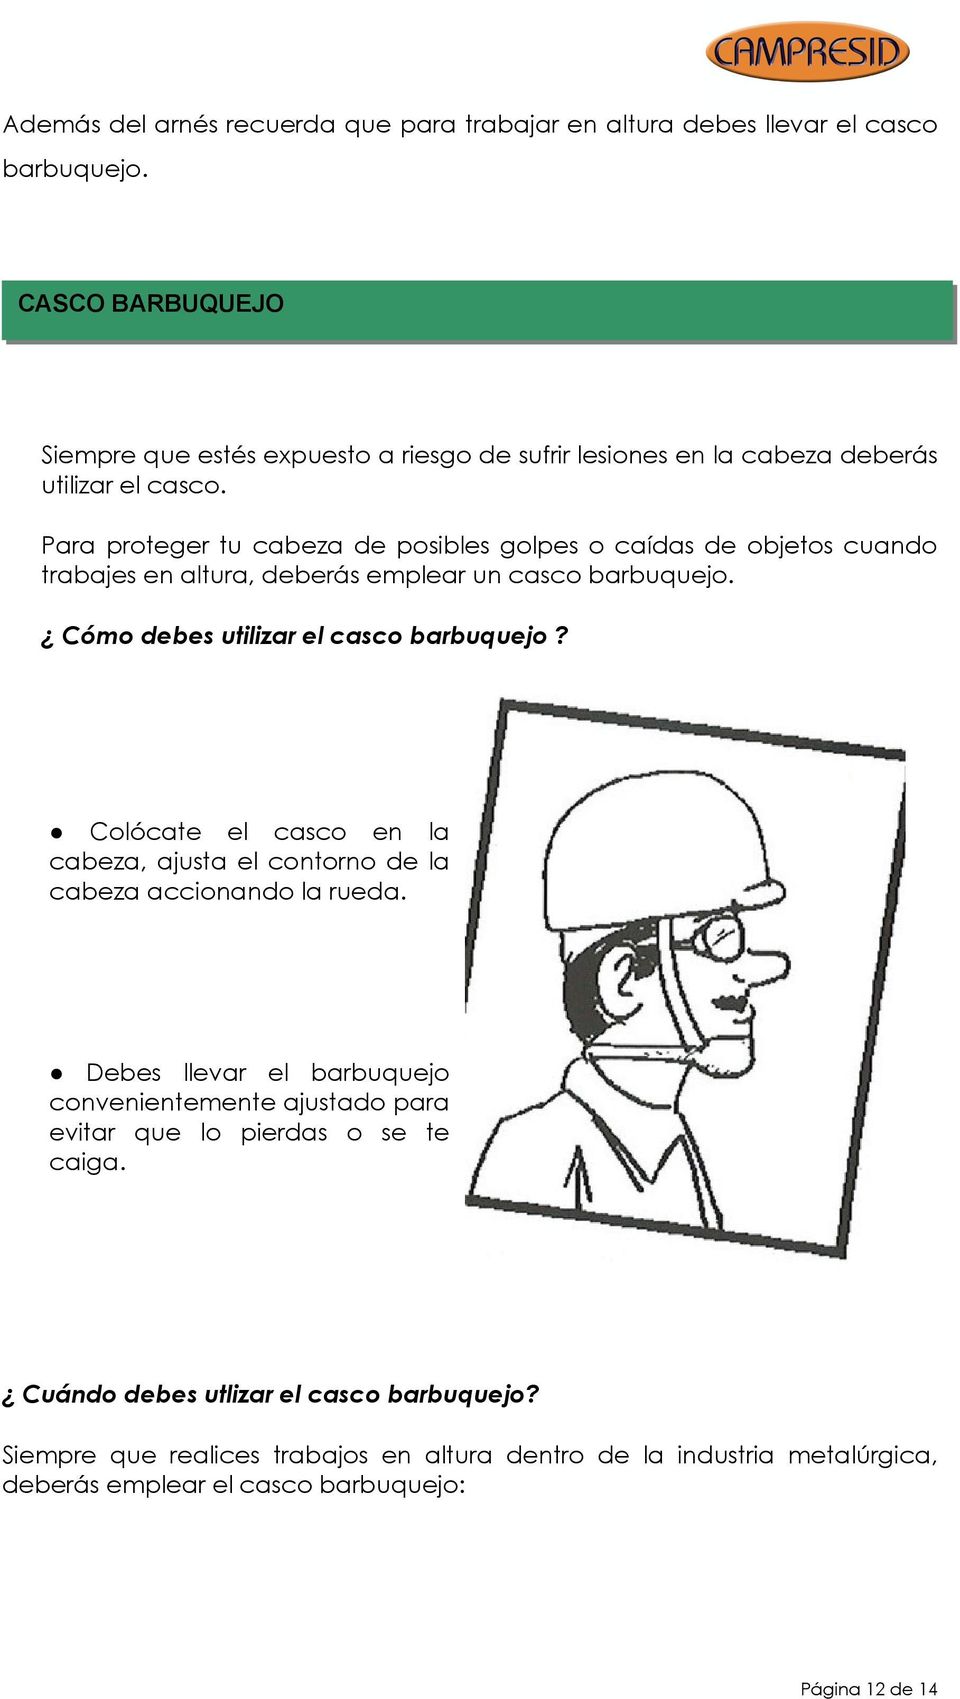 Para proteger tu cabeza de posibles golpes o caídas de objetos cuando trabajes en altura, deberás emplear un casco barbuquejo. Cómo debes utilizar el casco barbuquejo?